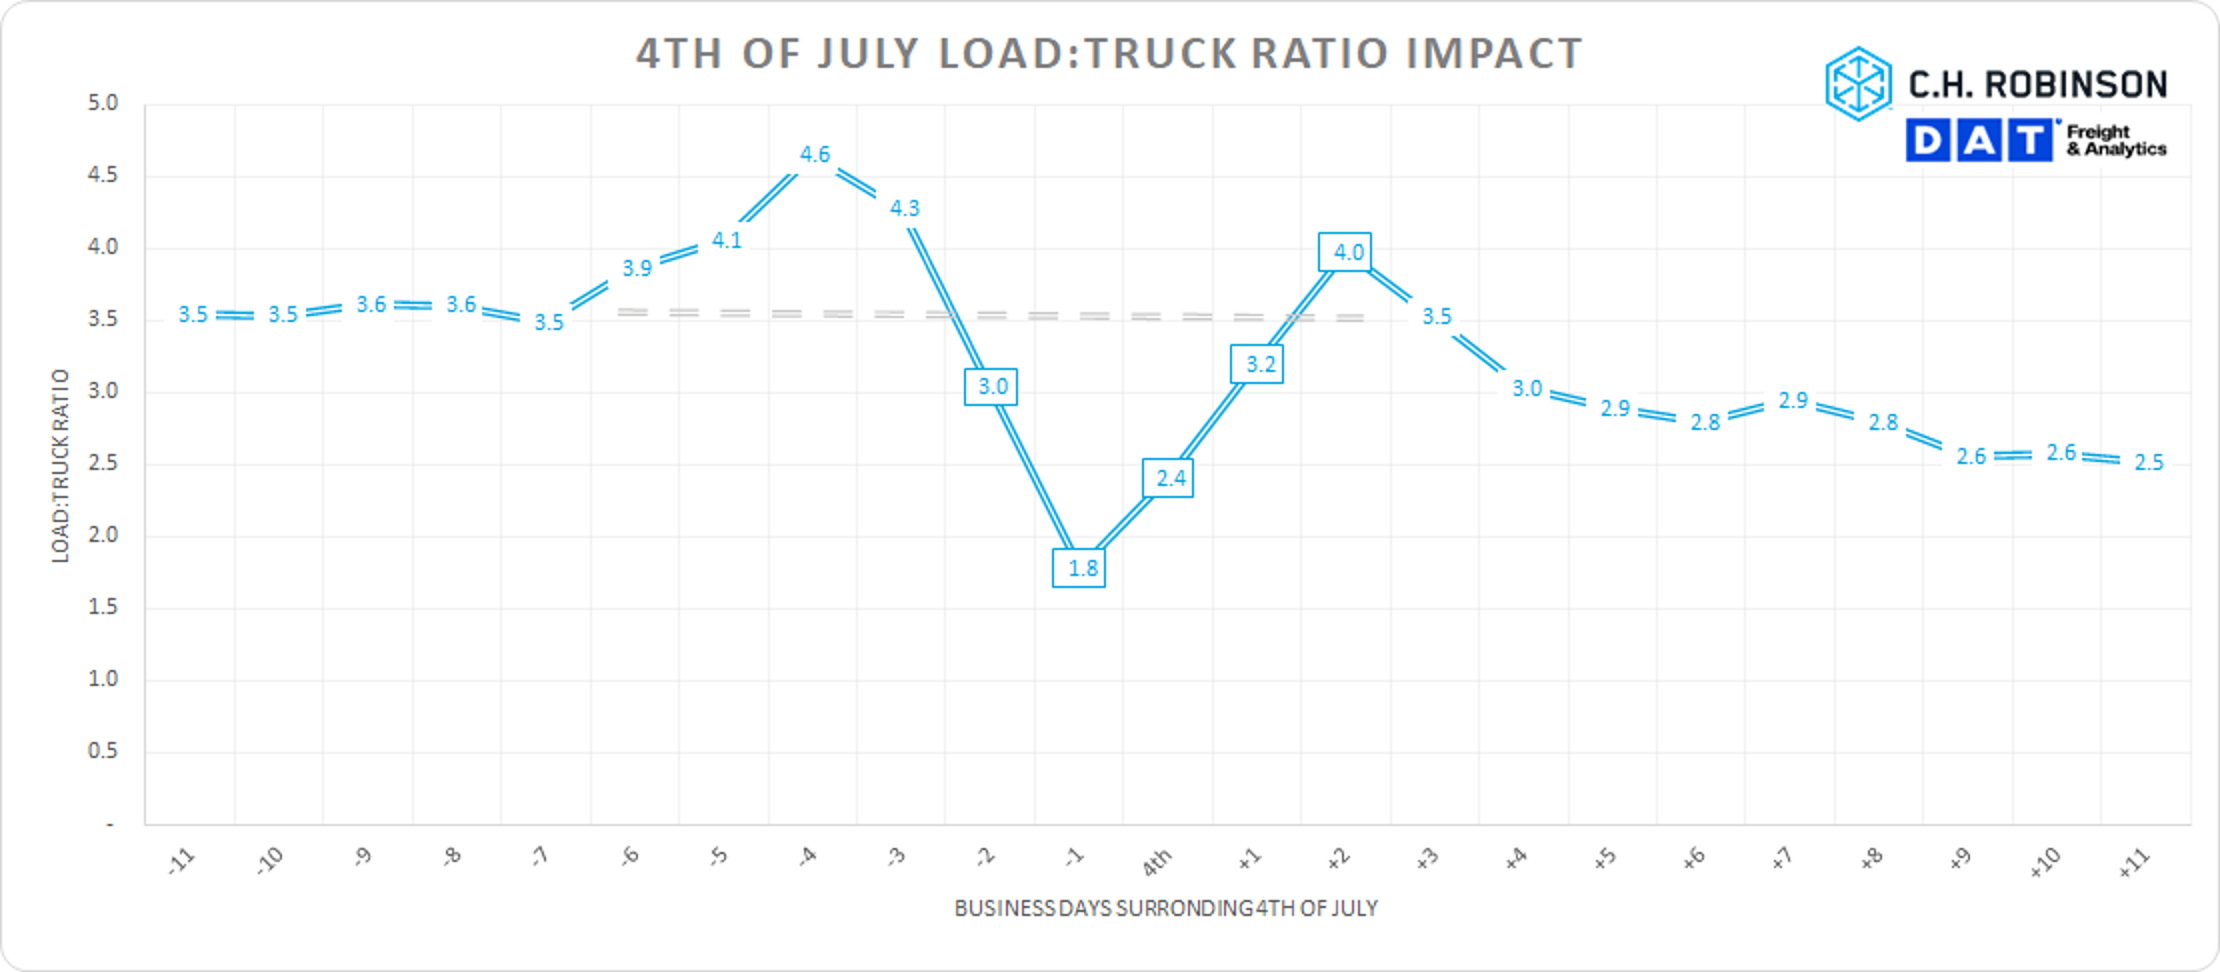 Auswirkungen des 4. Juli-Lastwagen-Verhältnisses